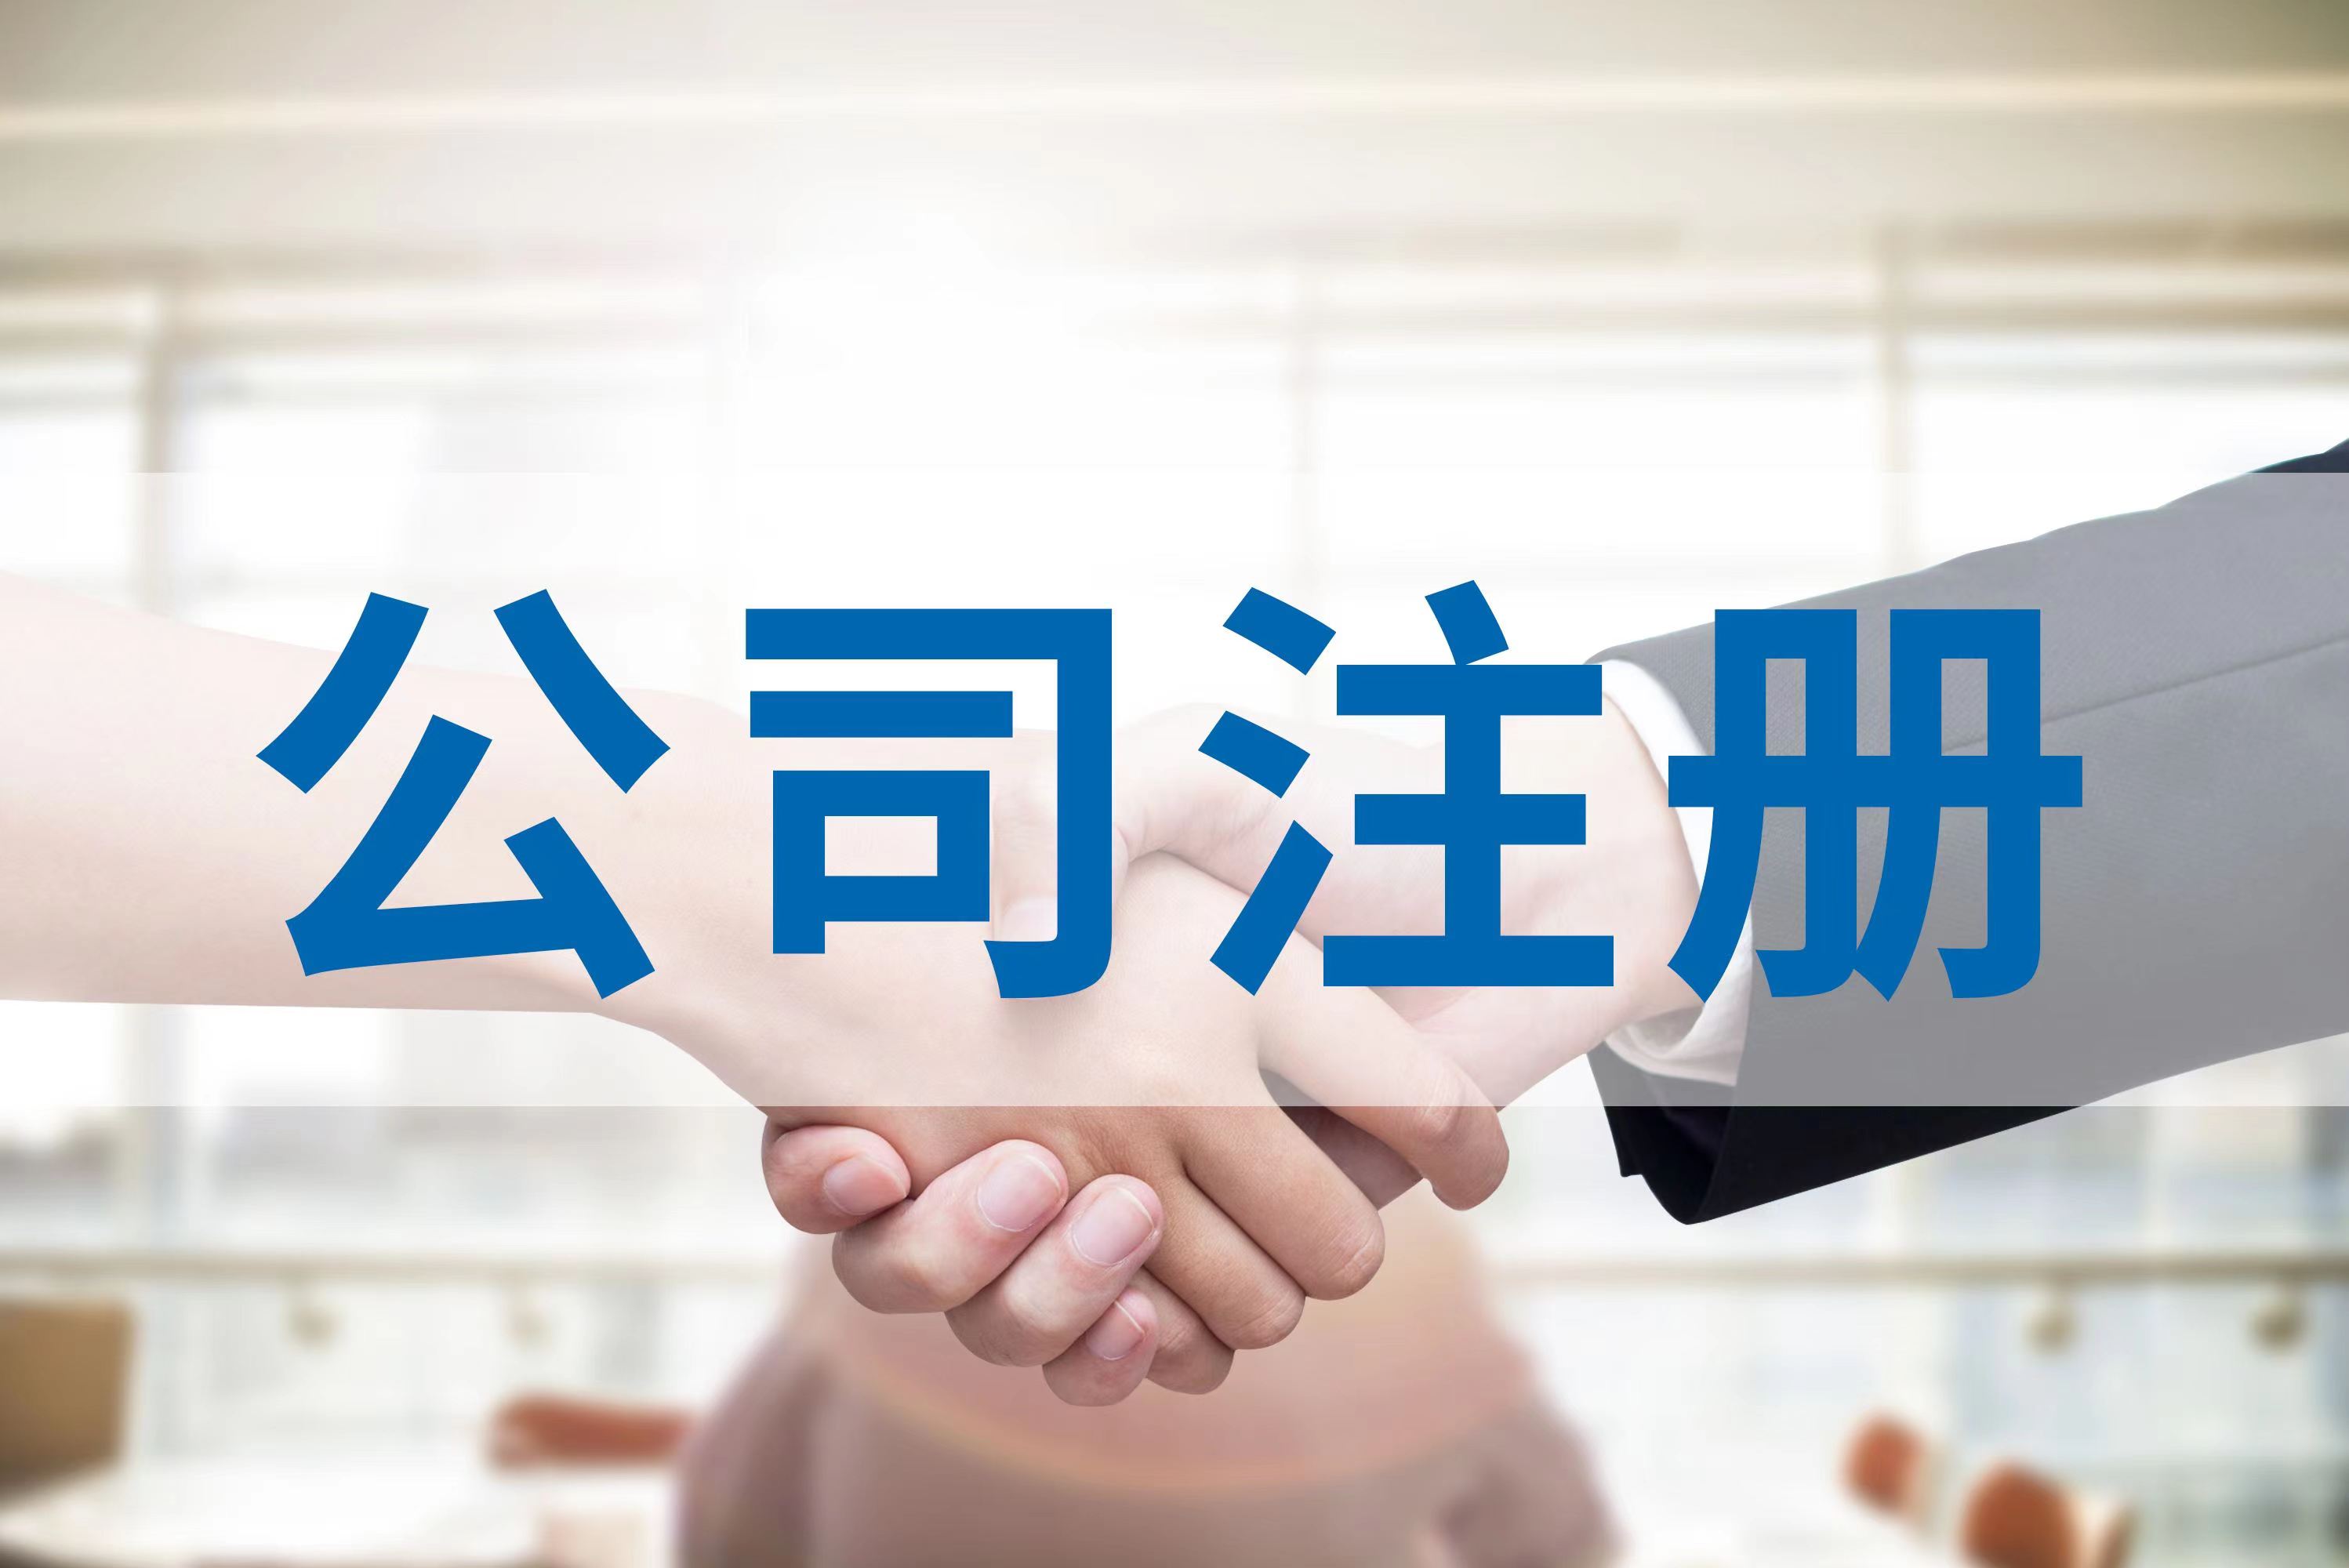 广州番禺区市桥街公司注册服务质量高 办事效率快 收费合理的经营机构